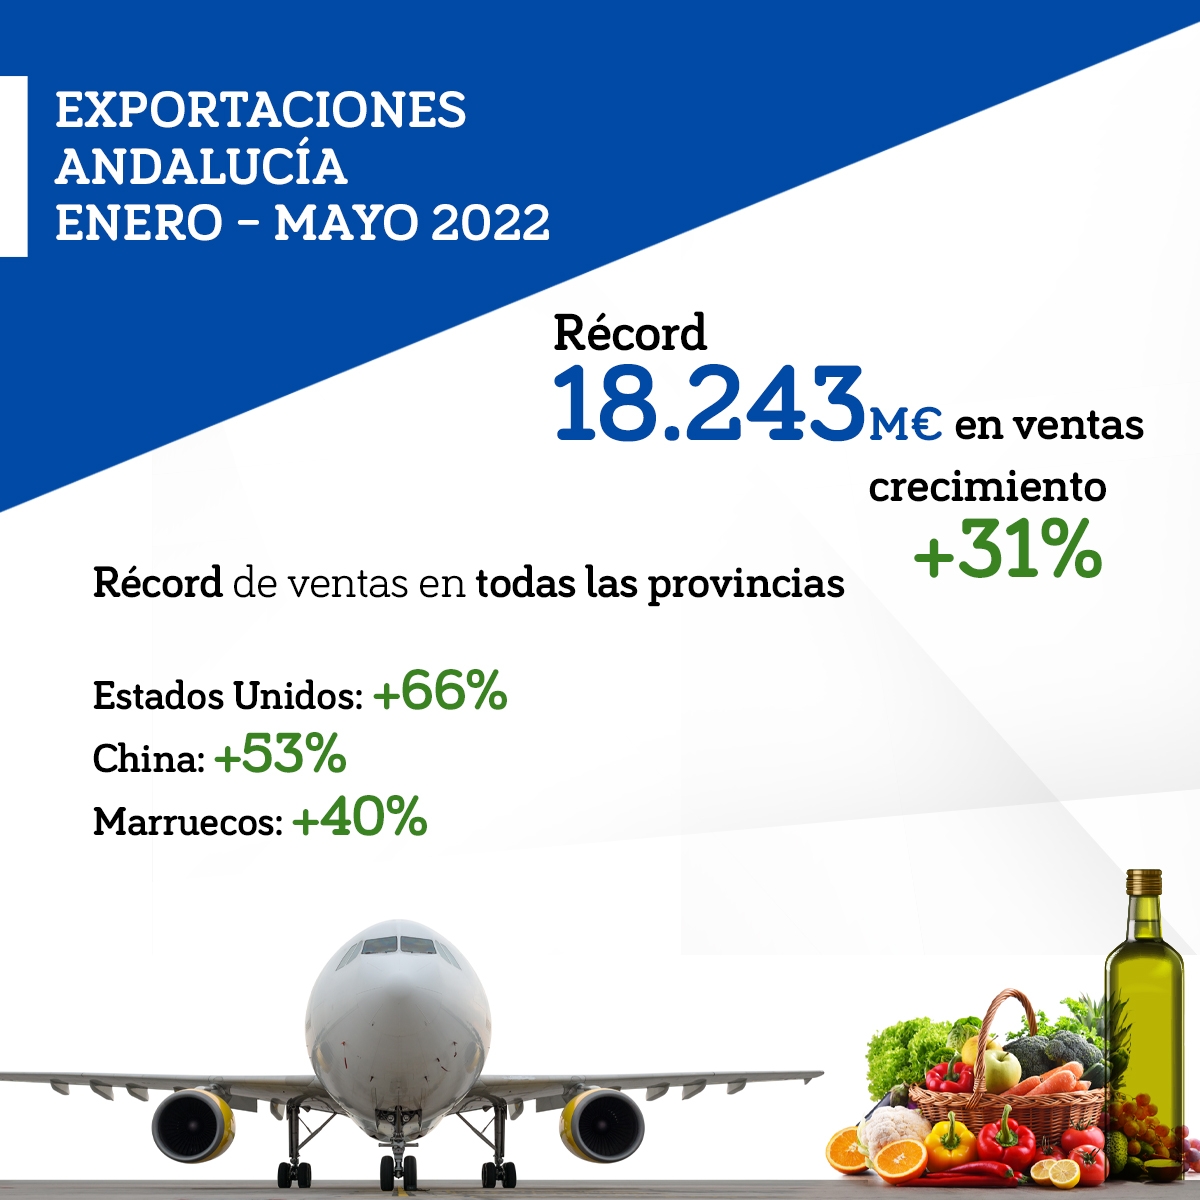 Las exportaciones andaluzas vuelven a marcar un récord entre enero y mayo